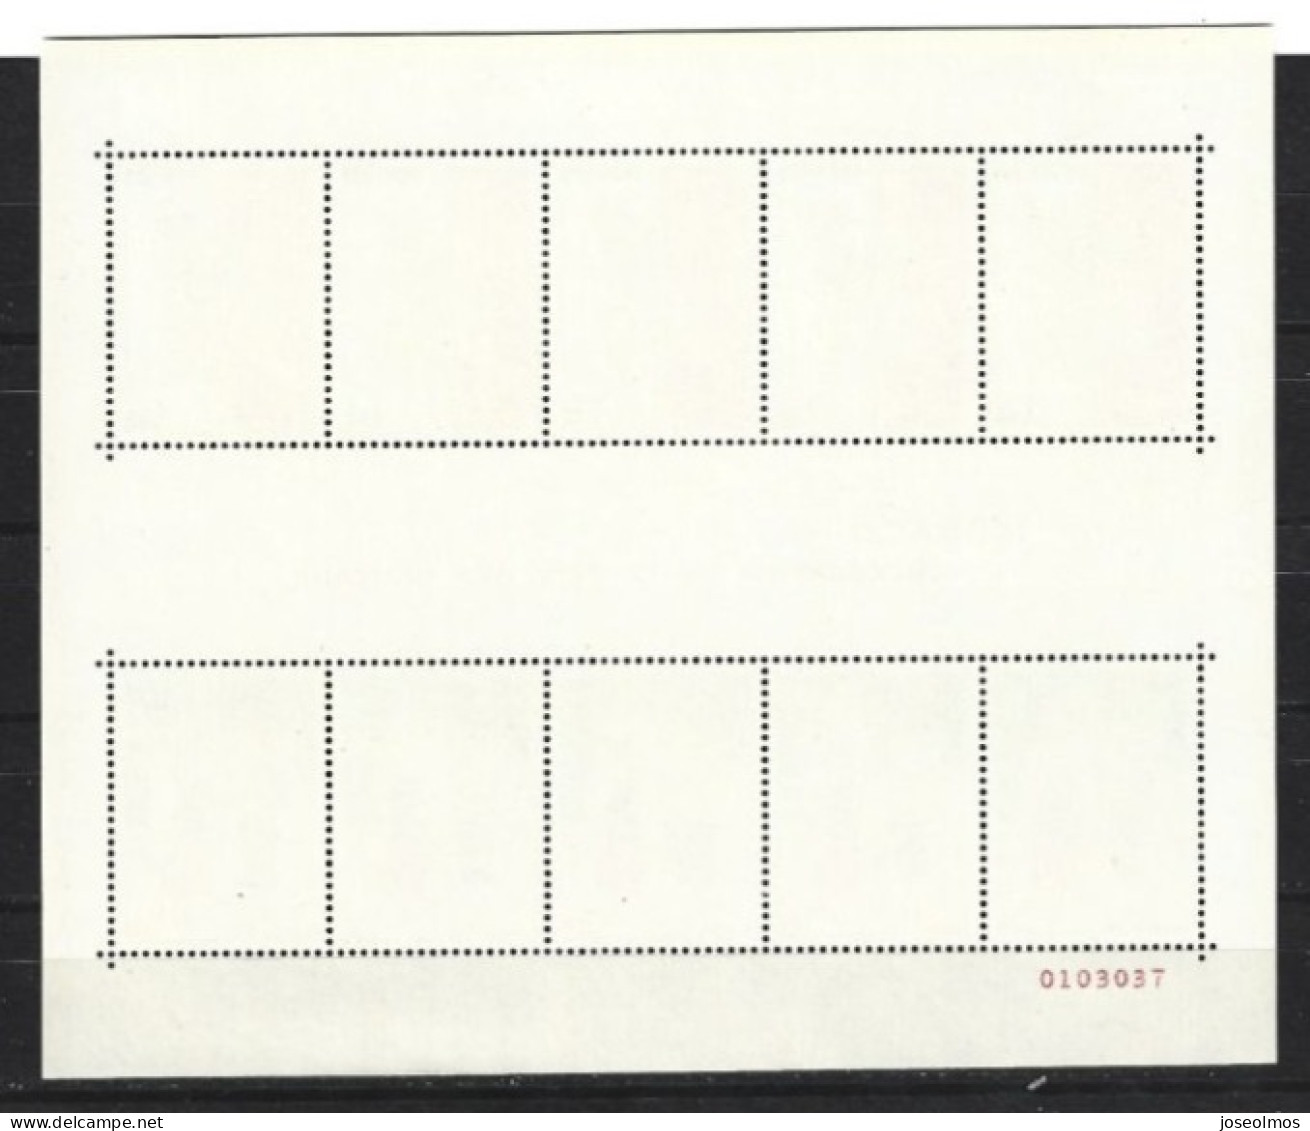 MONACO ANNEE COMPLETE 1981 NEUF** MNH +4 PREOS + 1 BLOC - Années Complètes